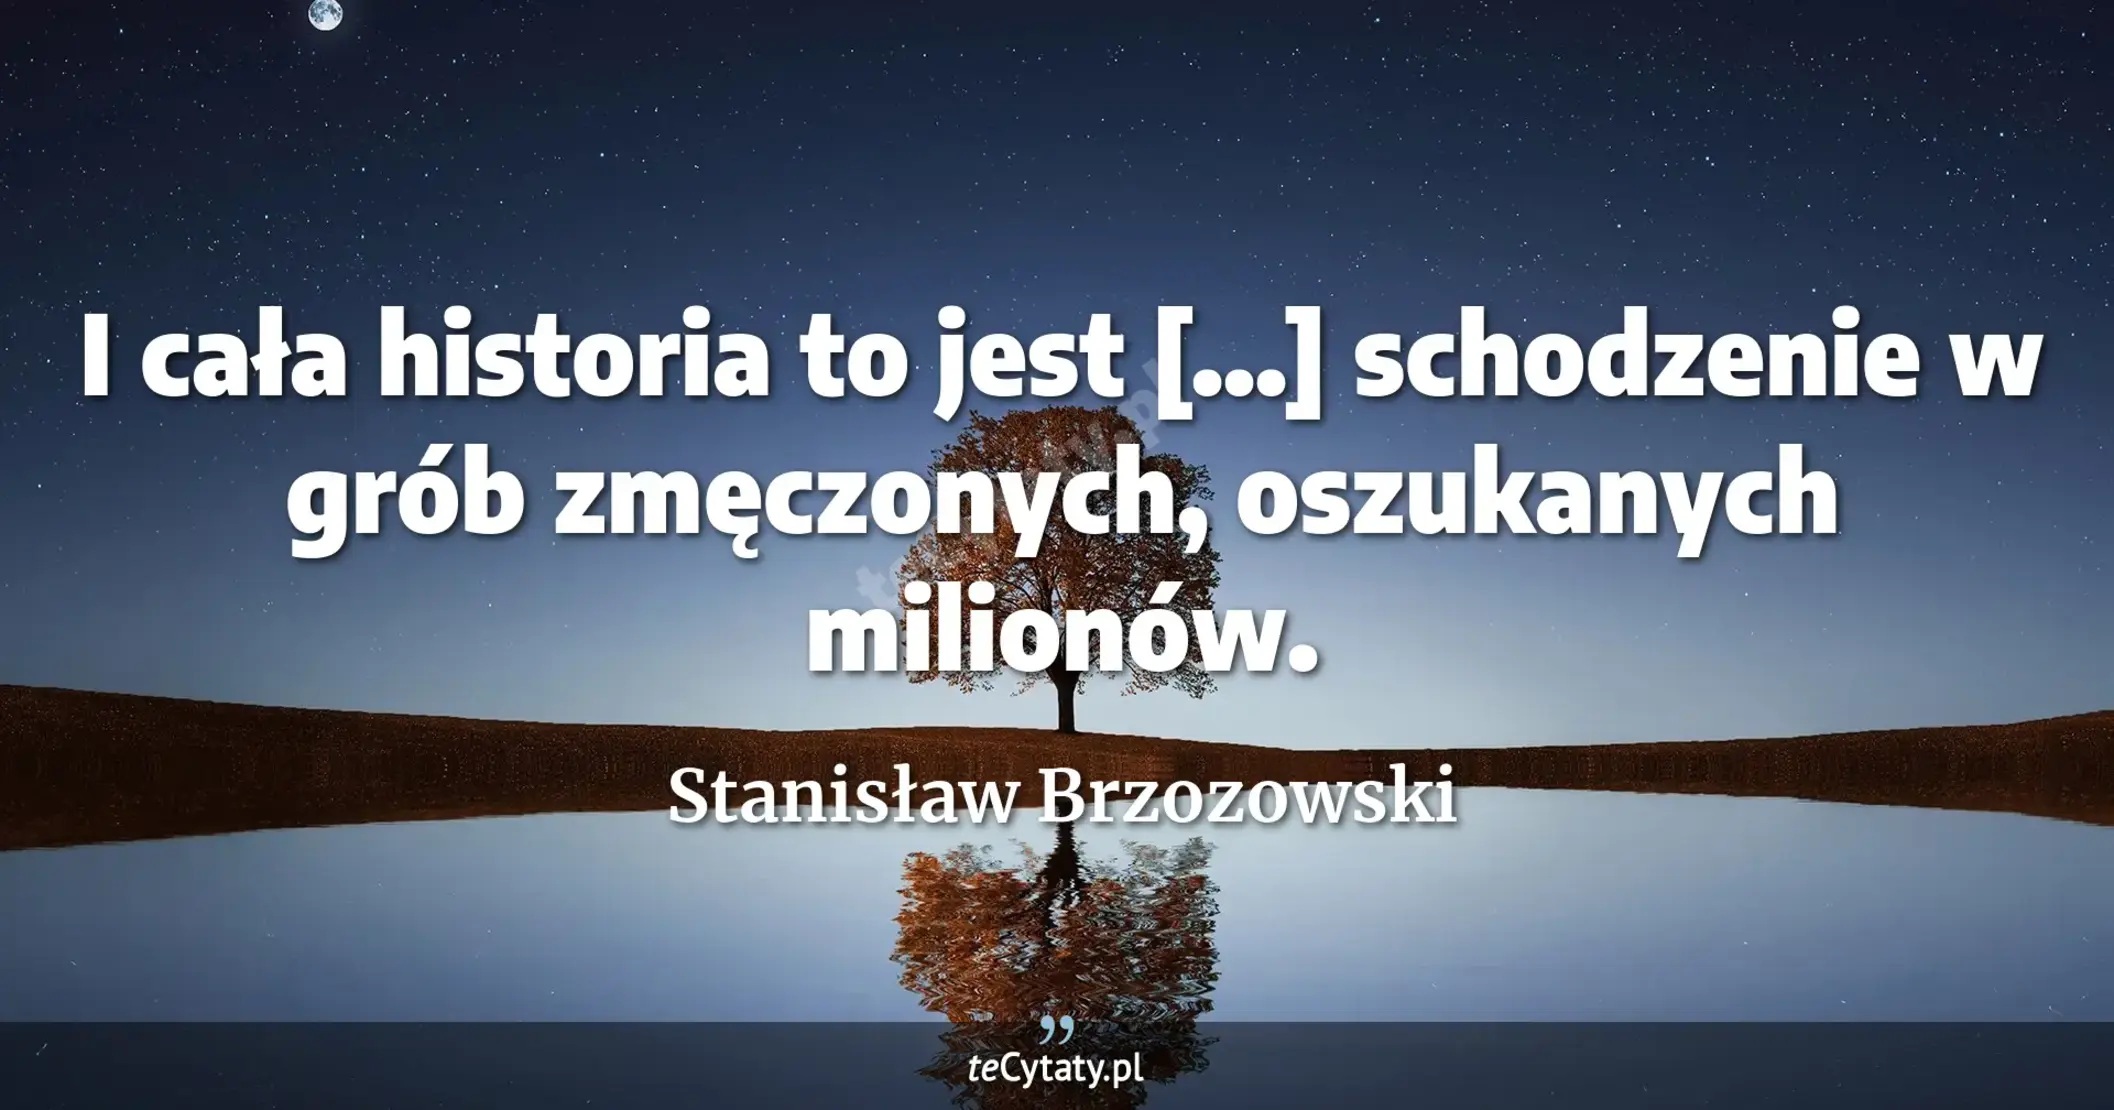 I cała historia to jest [...] schodzenie w grób zmęczonych, oszukanych milionów. - Stanisław Brzozowski